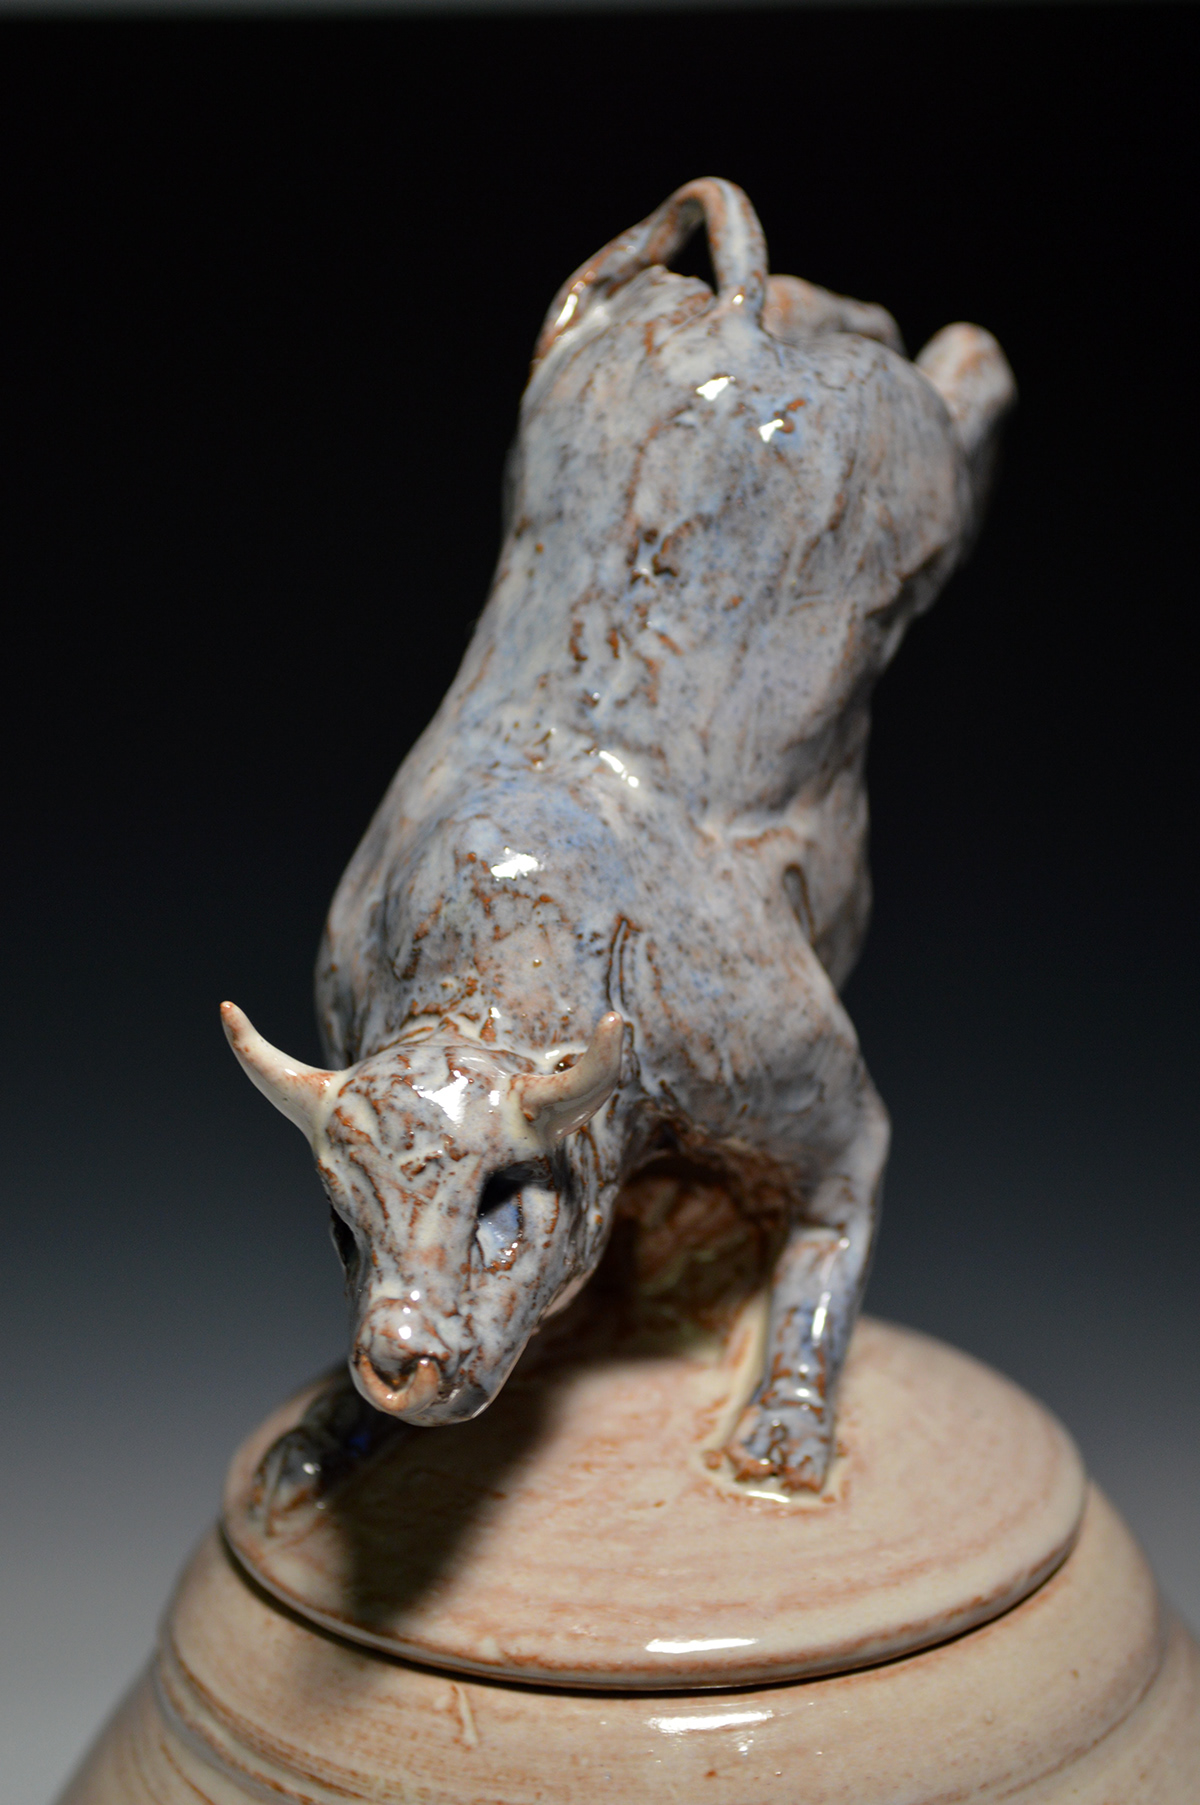 De Barro bulls ceramic sculpture